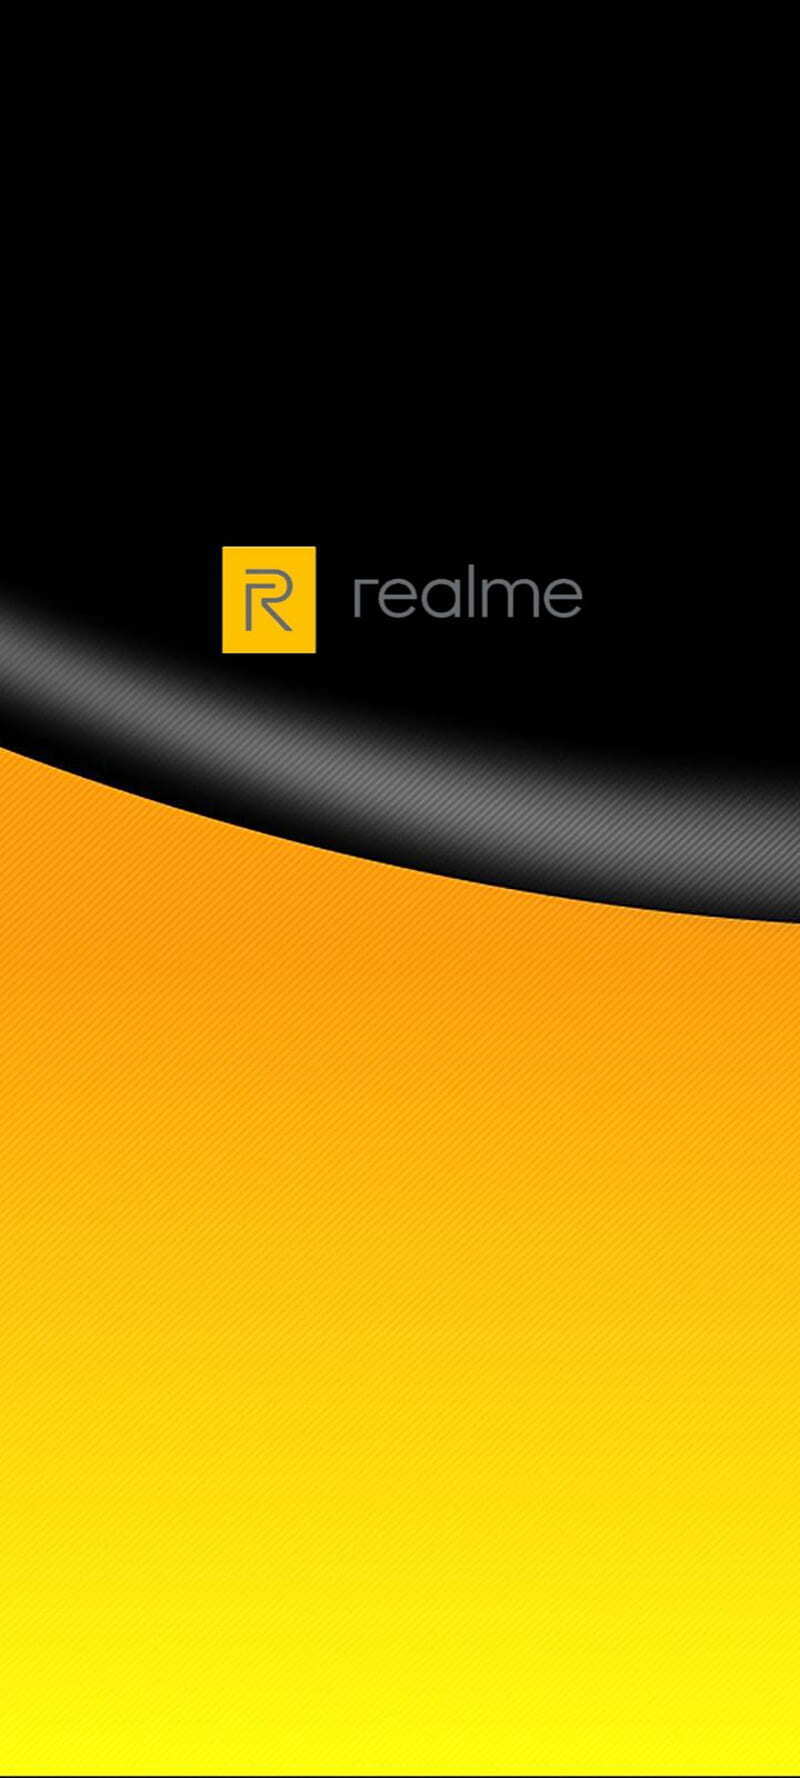 Hình nền Realme cực đẹp chuẩn full HD sẽ làm tăng thêm vẻ đẹp cho chiếc điện thoại của bạn. Mỗi hình đều được chọn lọc kĩ càng và phù hợp với nhiều phong cách khác nhau. Không chỉ thế, chúng tôi còn đảm bảo rằng chất lượng hình ảnh sẽ khiến bạn cảm thấy thích thú.